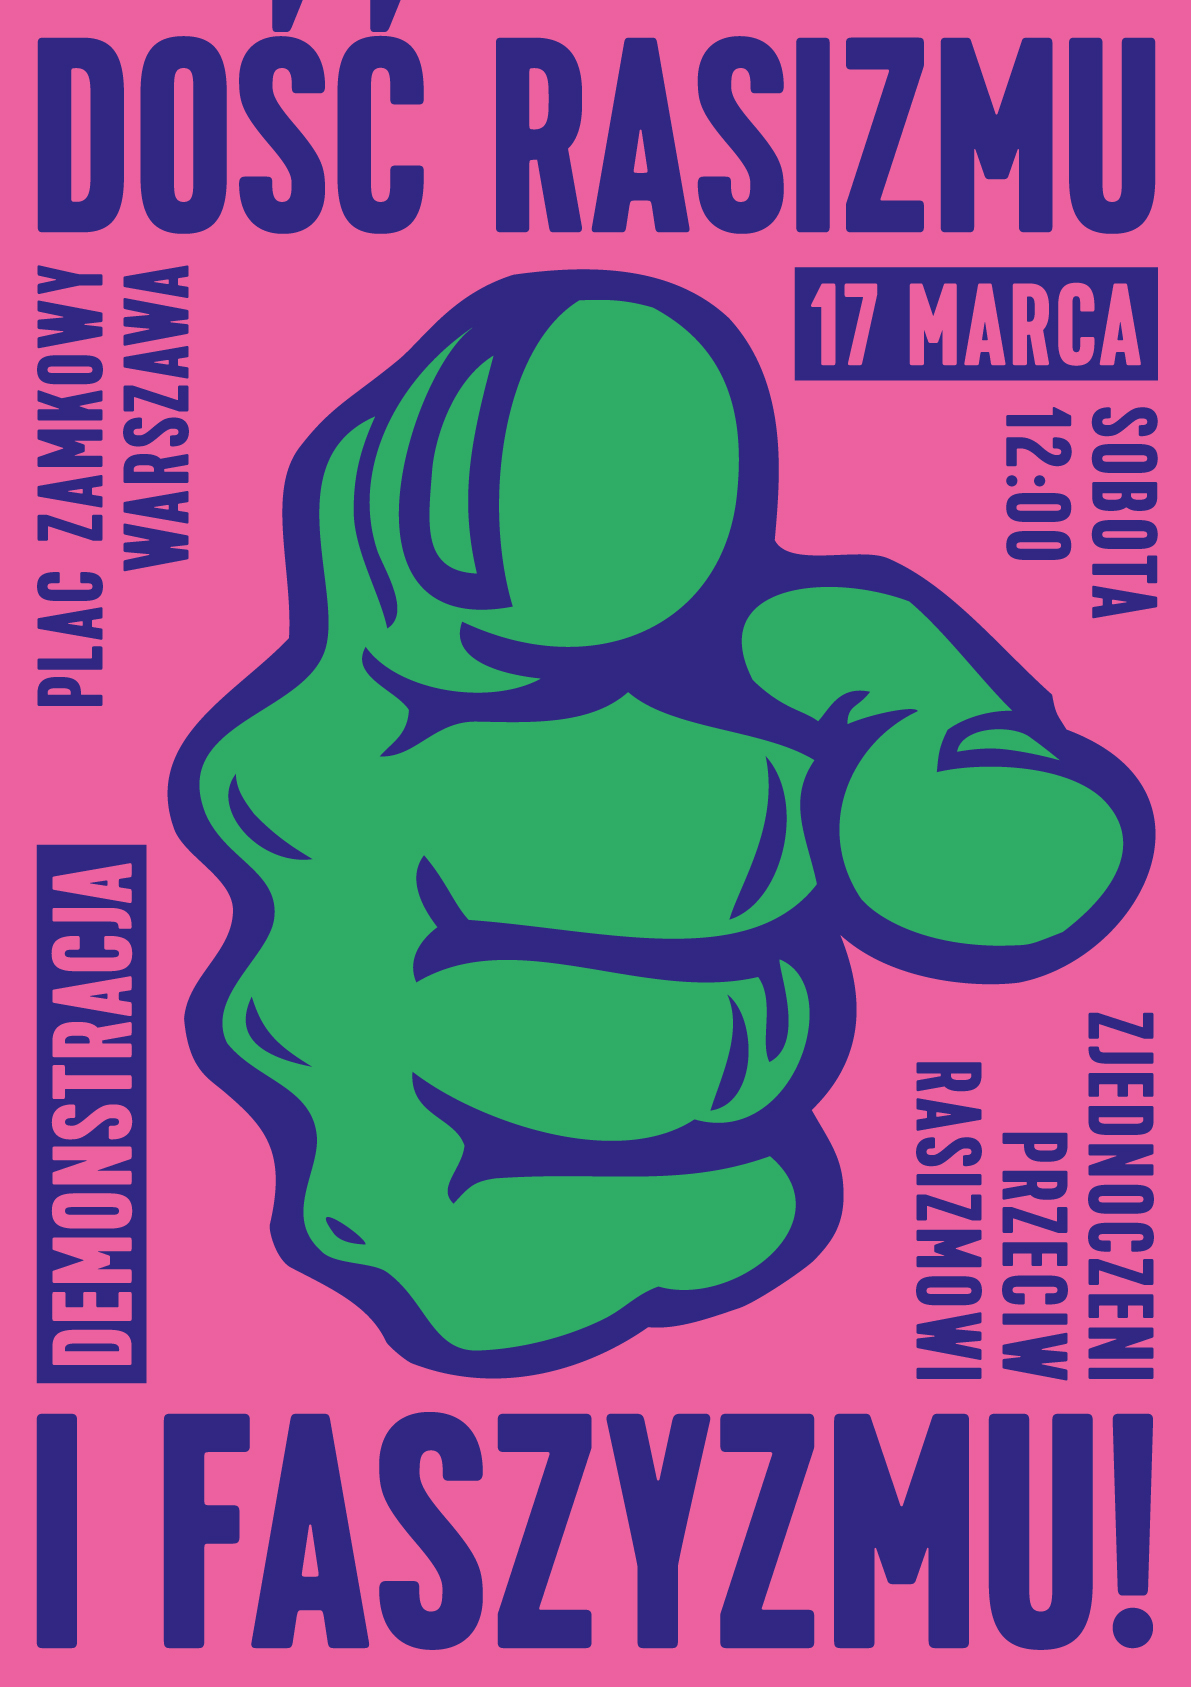 Plakat - demonstracja antyrasistowska 17 marca 2018